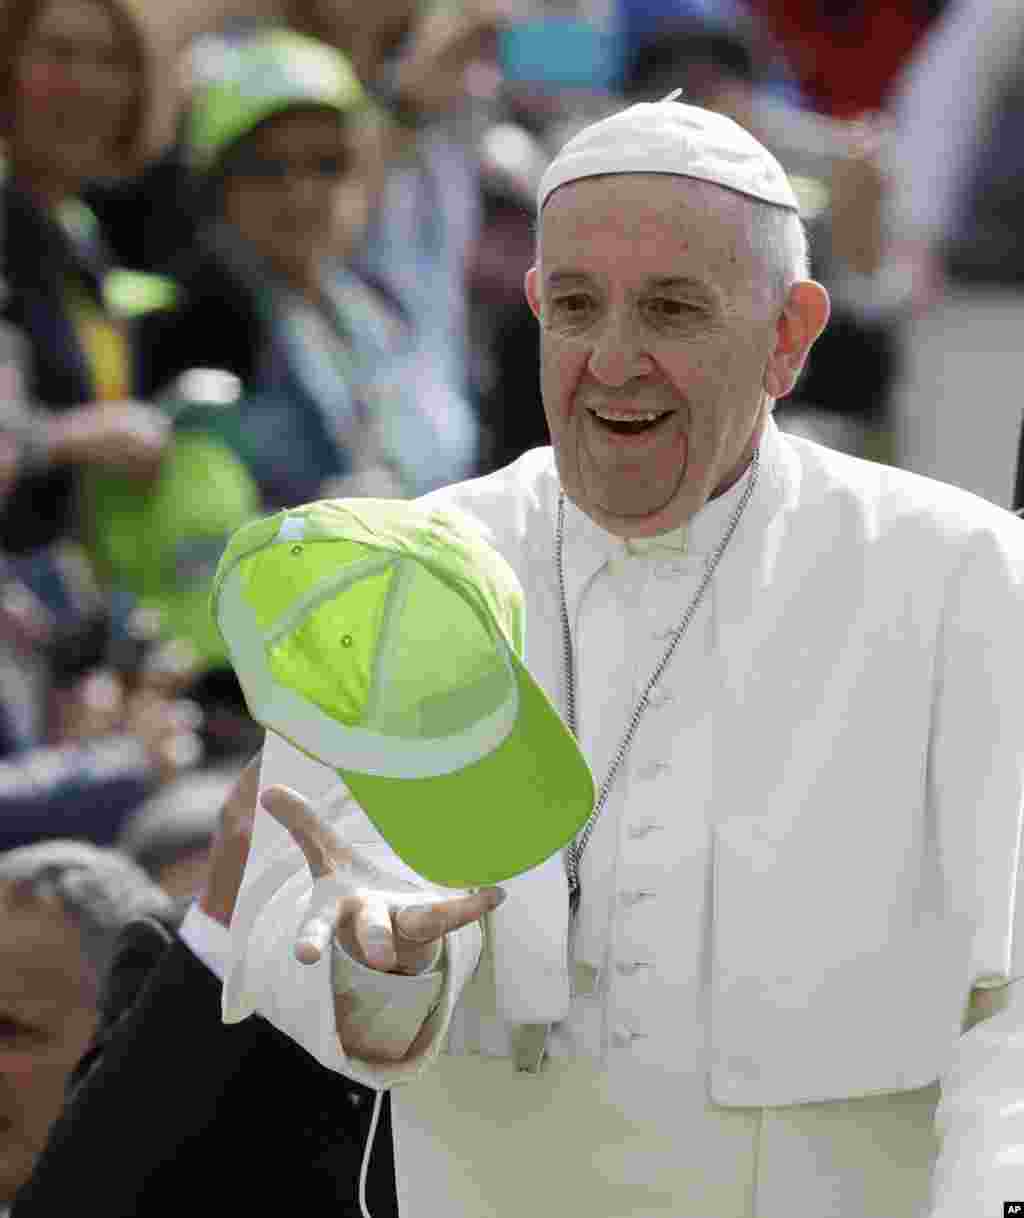 پاپ فرانسیس کلاهی را می گیرد که یکی از حامیانش به سمتش در حاشیه سخنرانی هفتگی اش در سنت پیترز واتیکان پرتاب کرده است.